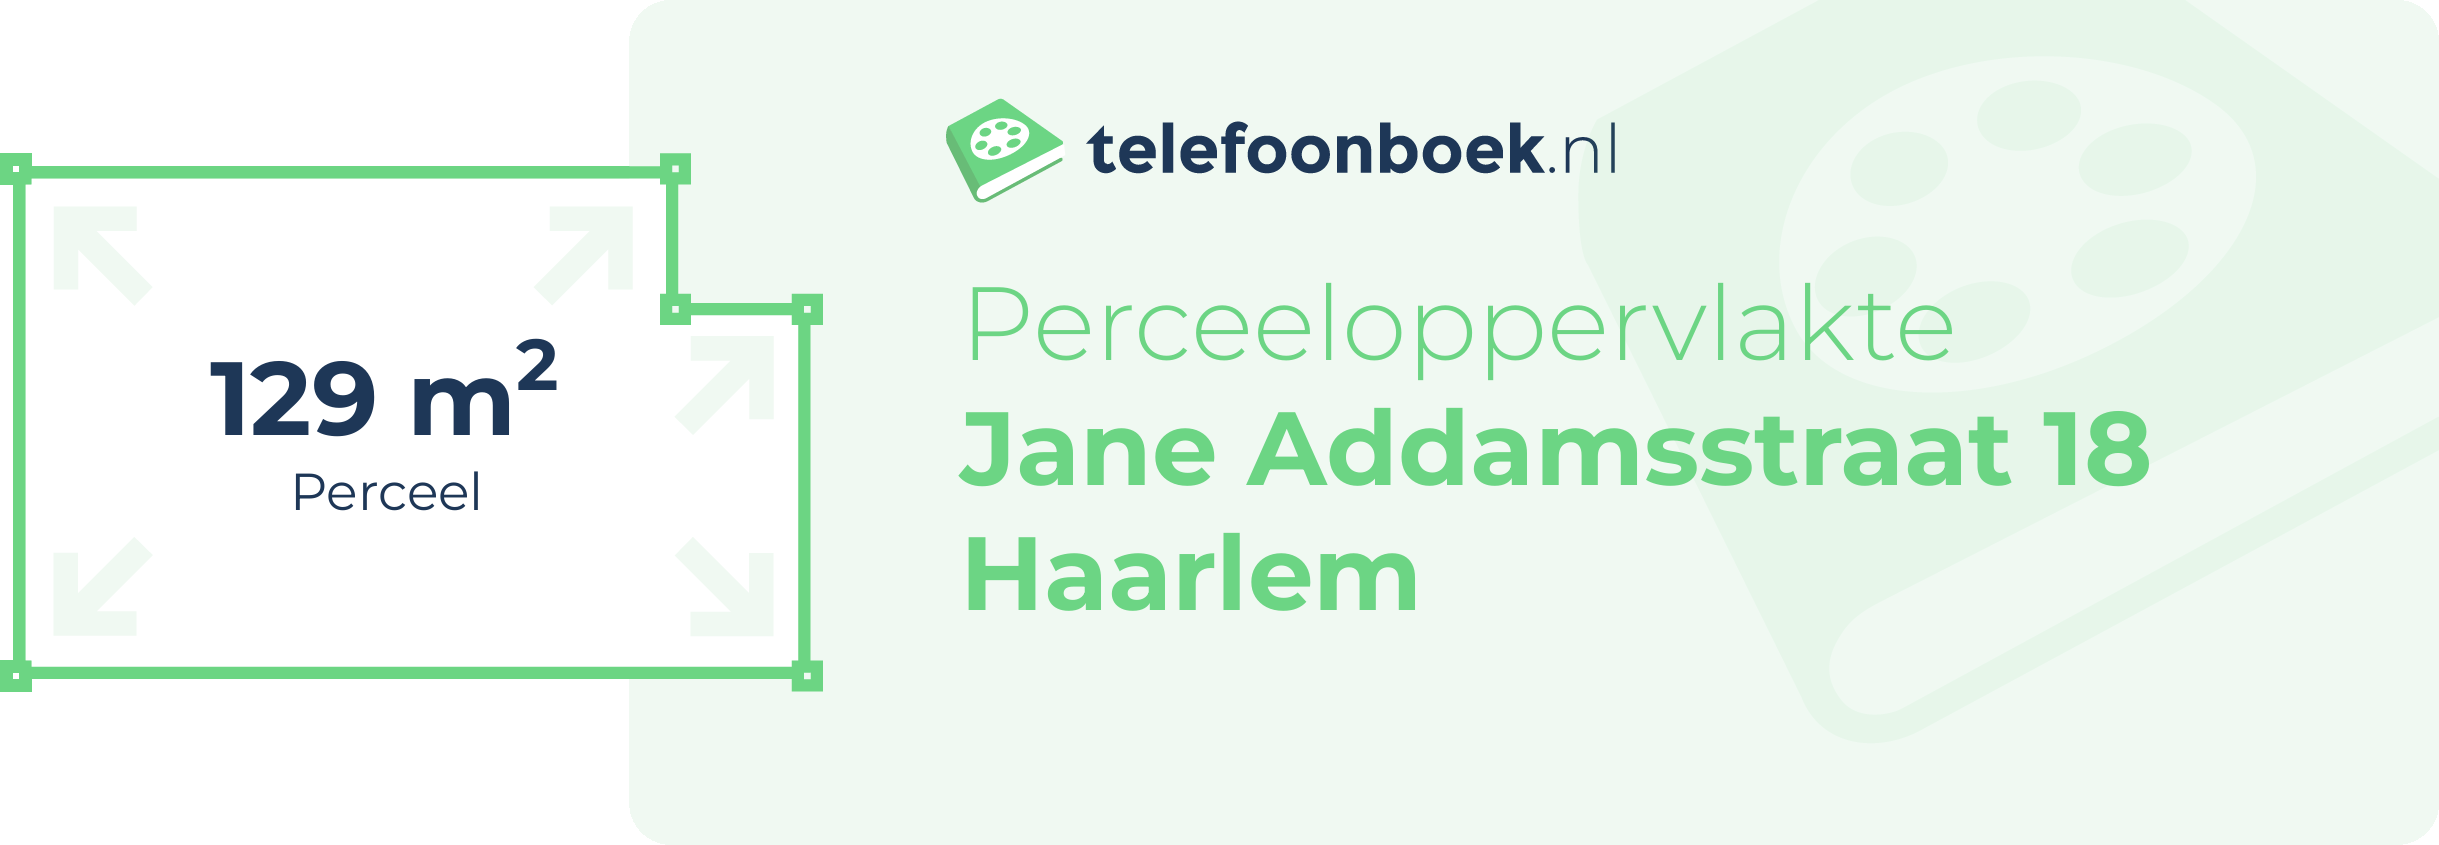 Perceeloppervlakte Jane Addamsstraat 18 Haarlem